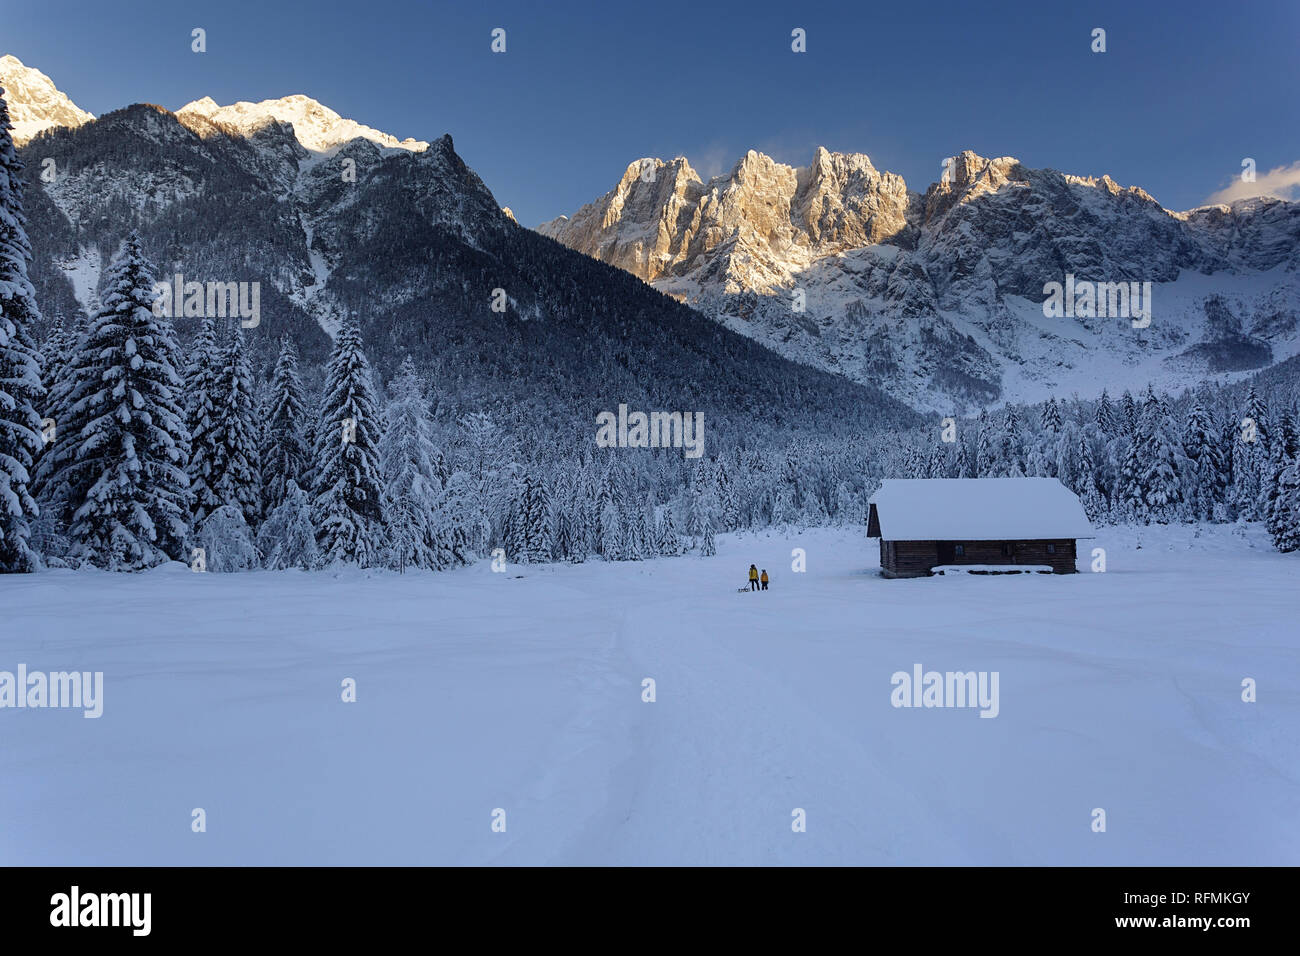 Mutter und Sohn wandern im Winter märchenhafte Landschaft mit Schlitten, Holzhütte und die Berge im Hintergrund, Slowenien, Krnica Stockfoto